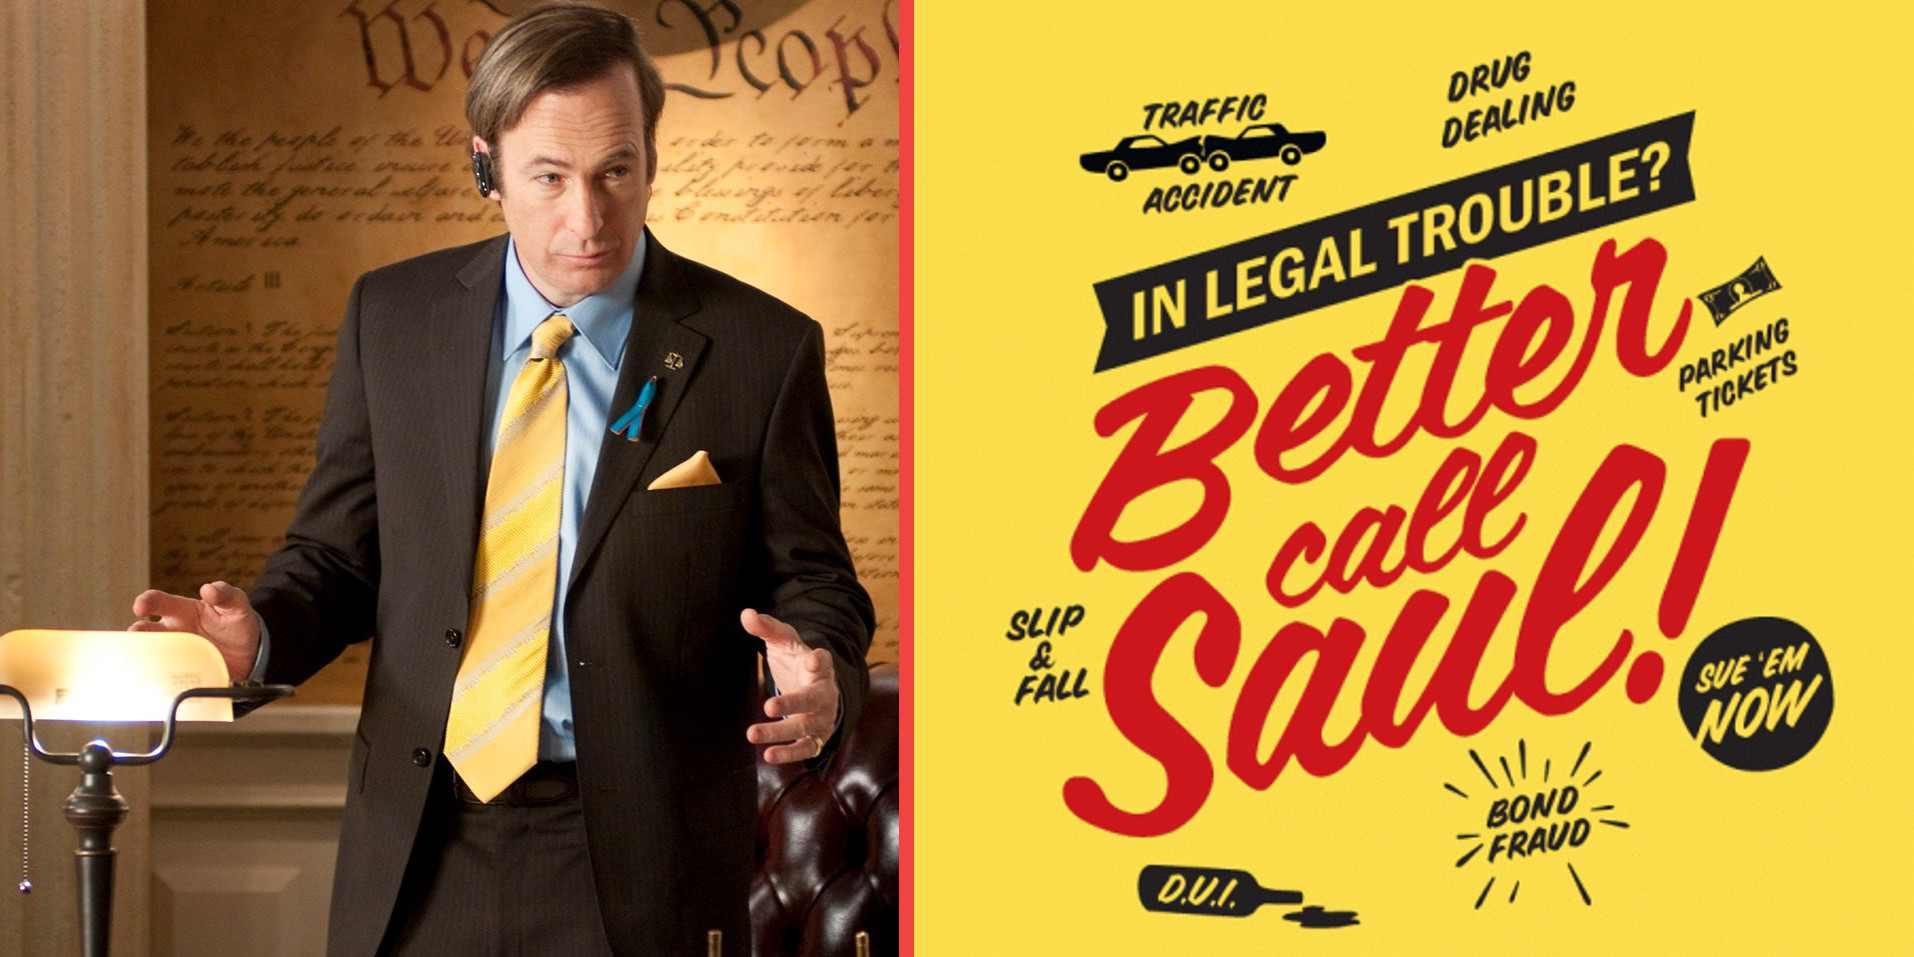 افضل المسلسلات الاجنبية 2015 - Better Call Saul!